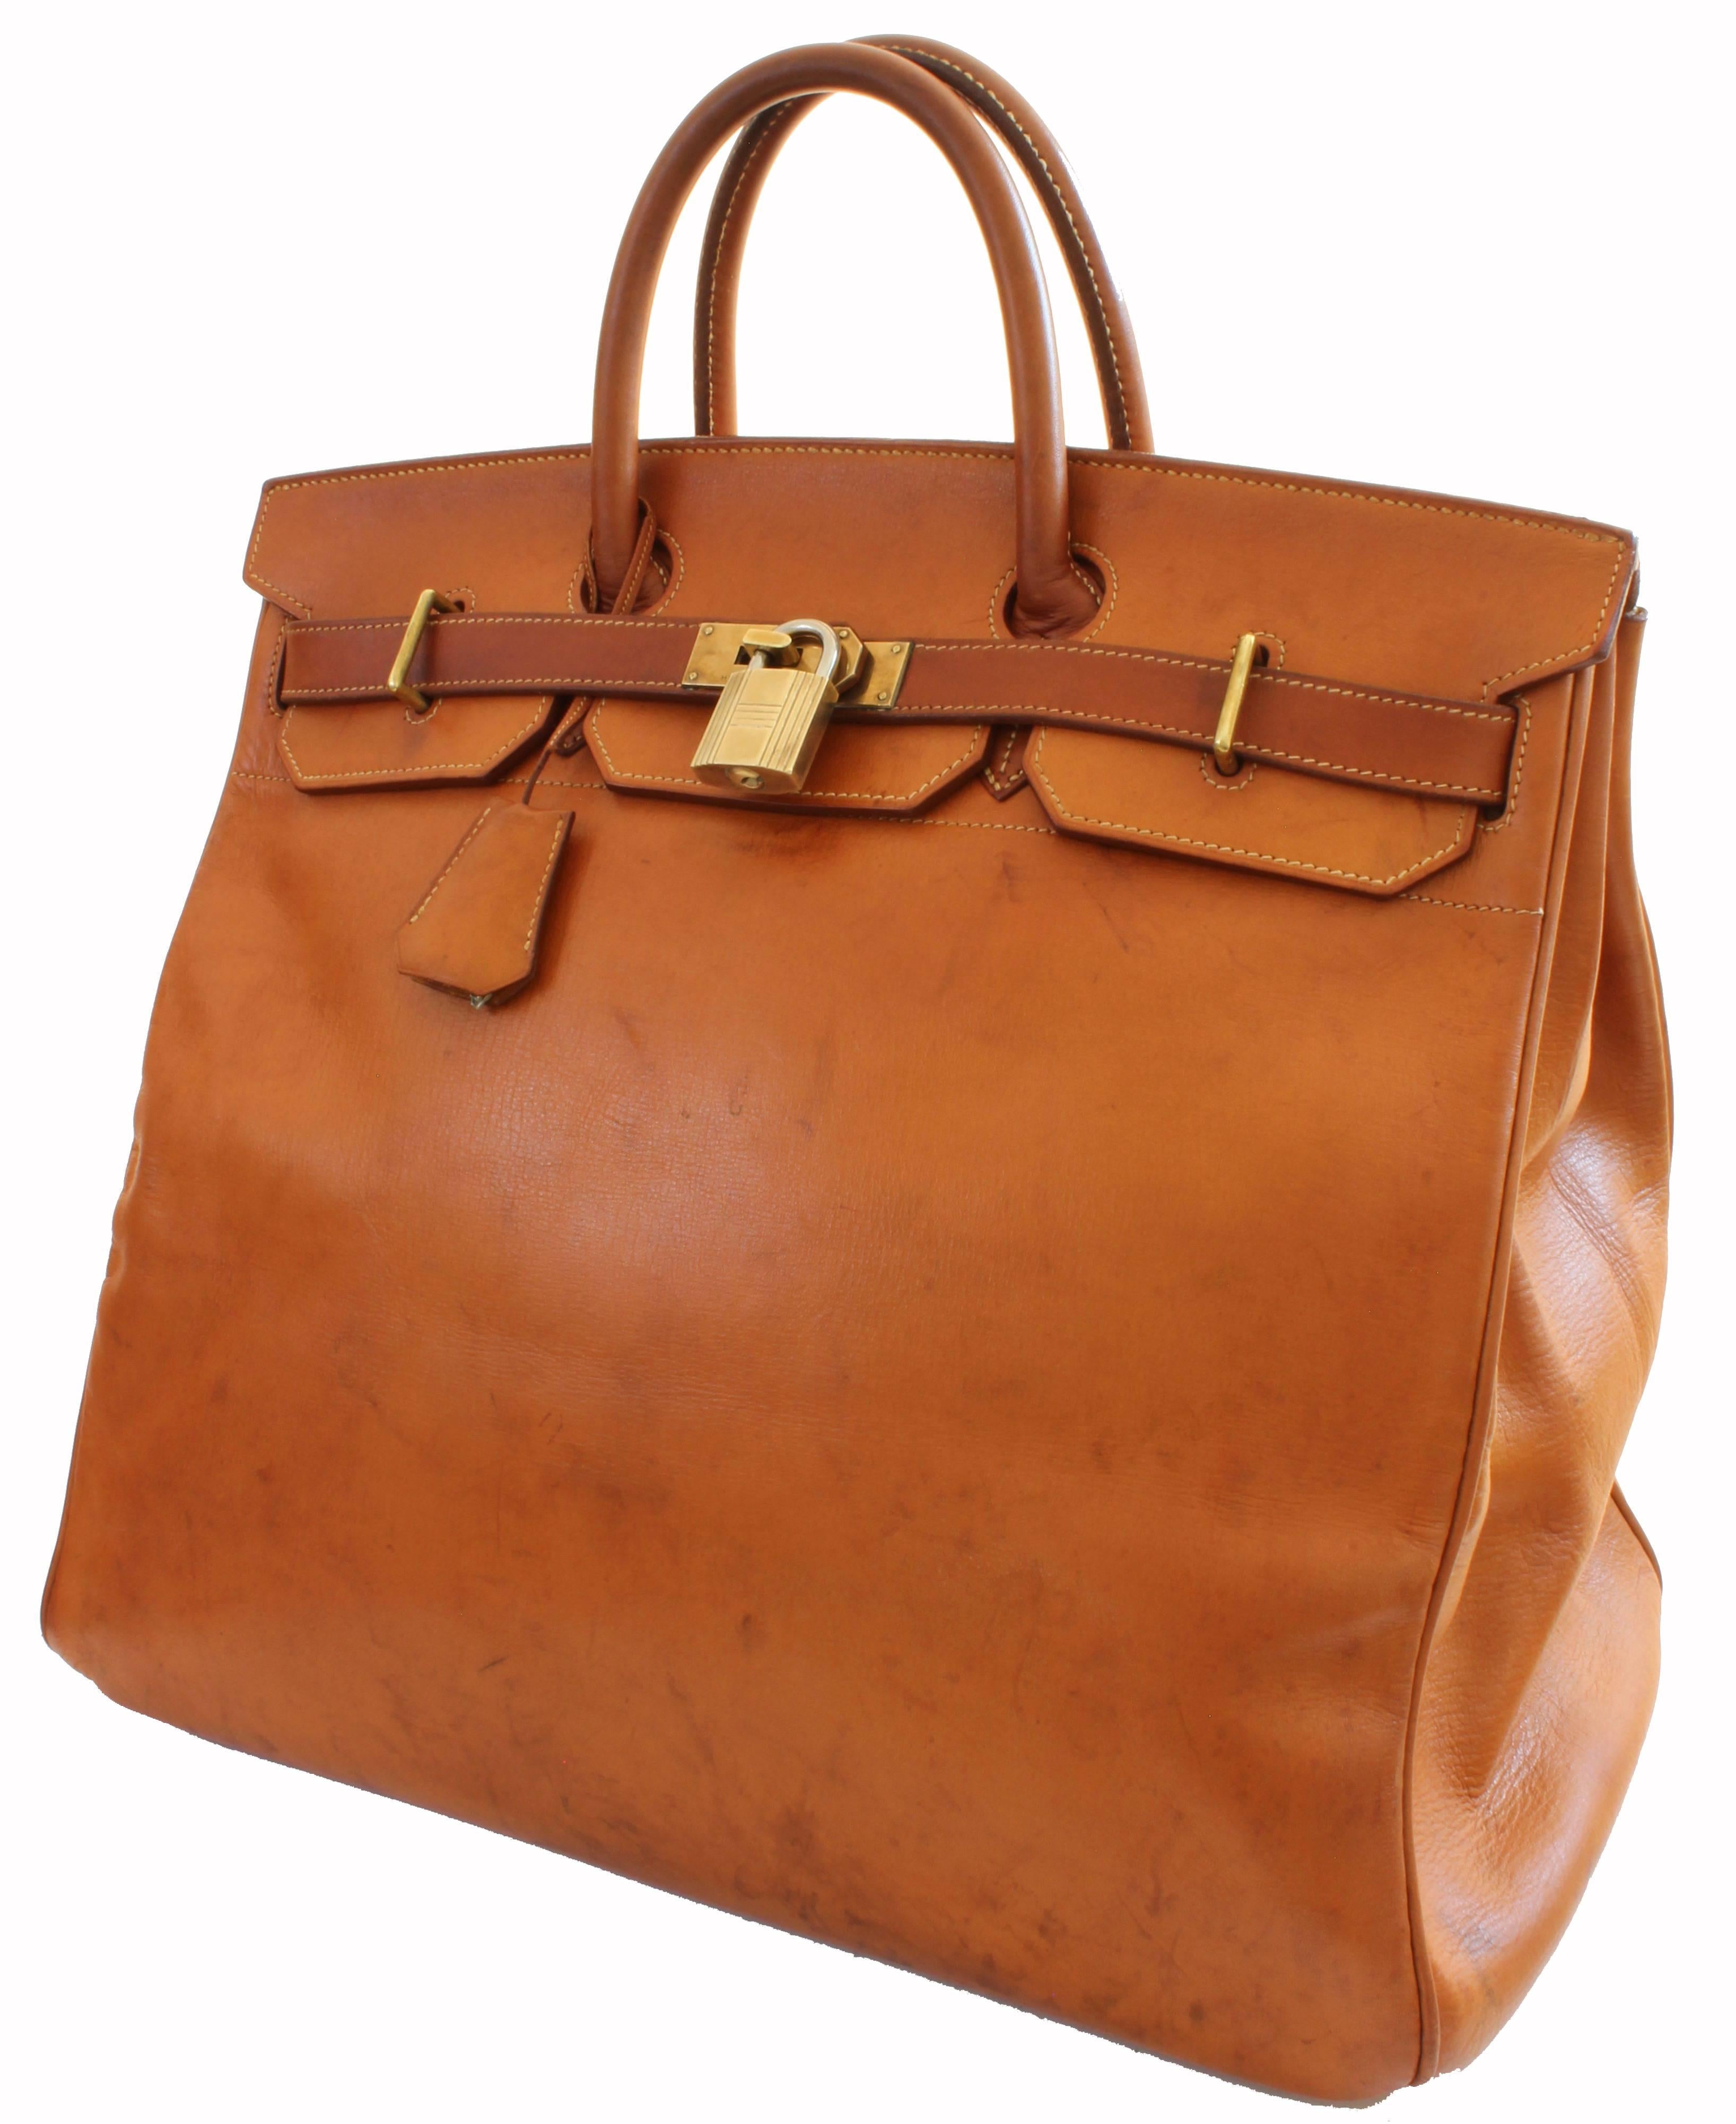 Brown Hermes Haut a Courroies Bag HAC 45cm Travel Tote Rare Veau Grain Long Leather 